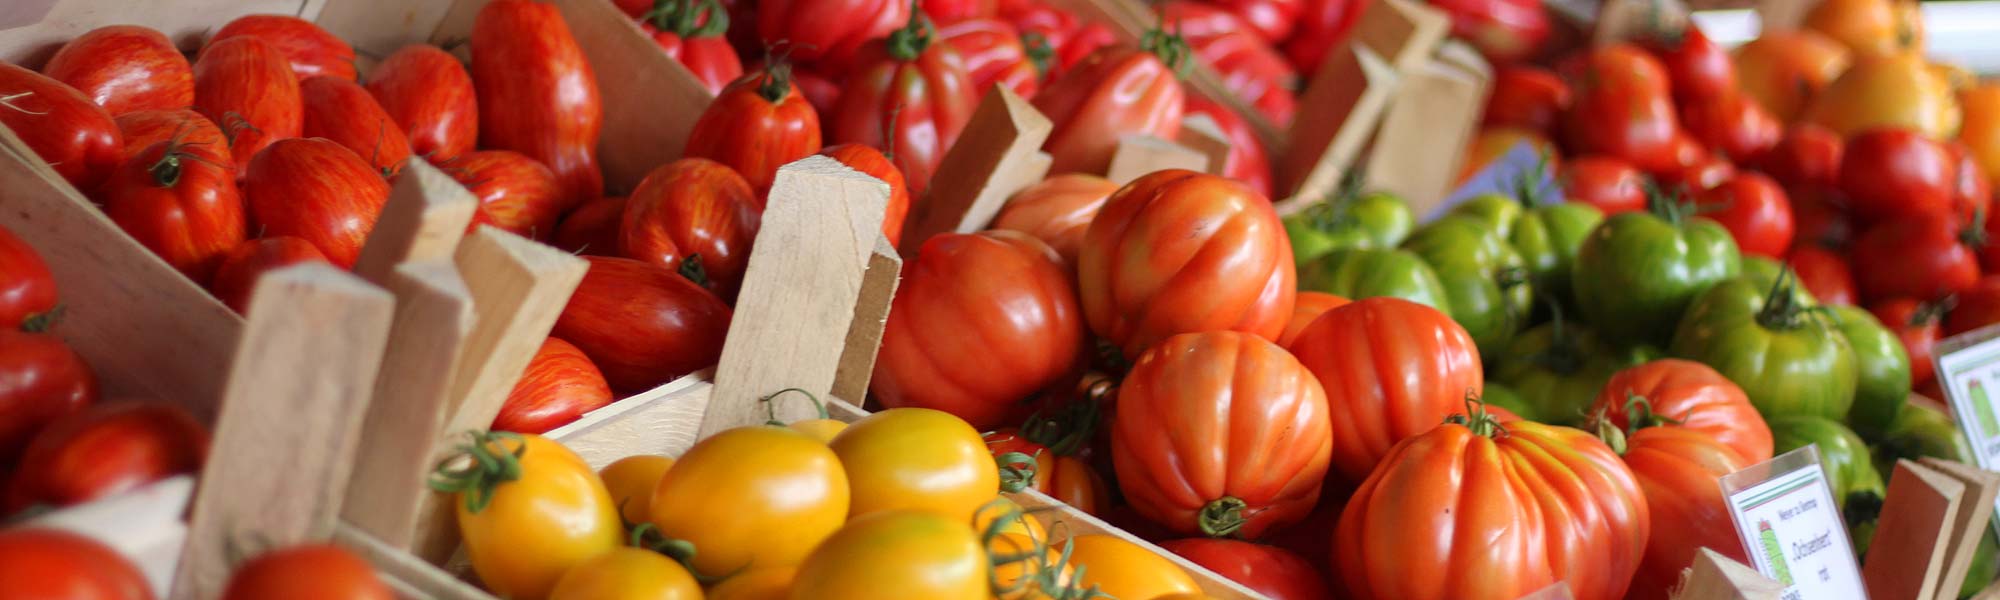 viele verschiedene Tomatensorten:Ochsenherz-Tomaten, Zahnradtomaten, Flaschentomaten und weitere Sorten